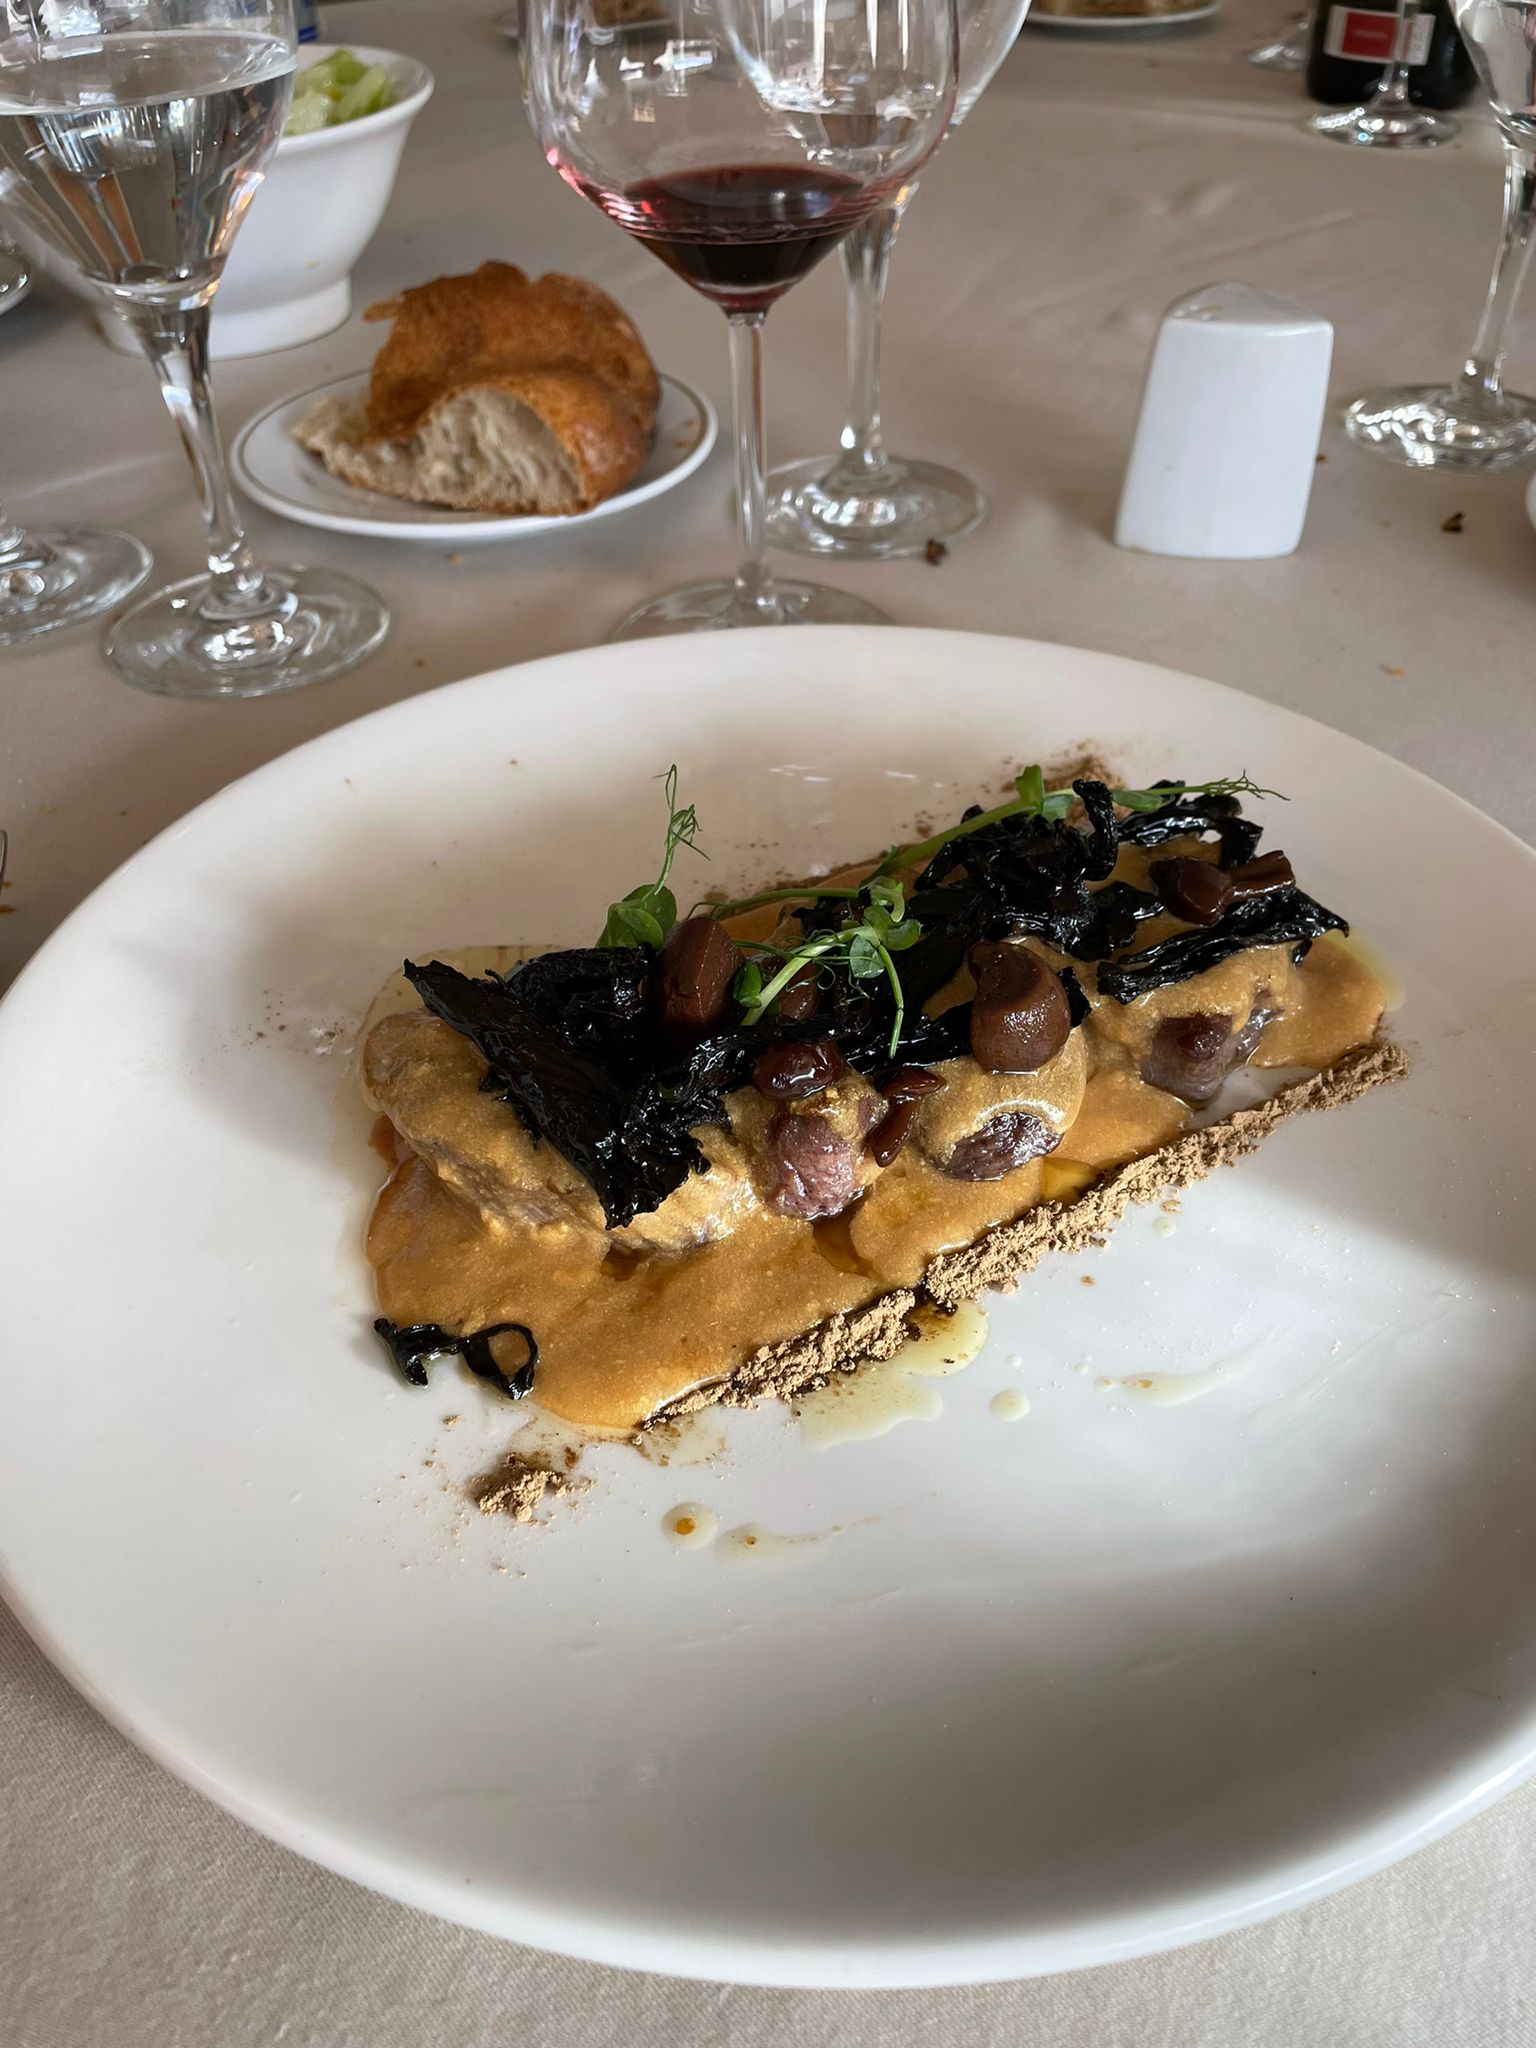 Reseñas gastronómicas: Asador Restaurante La Galería de Burgos 6